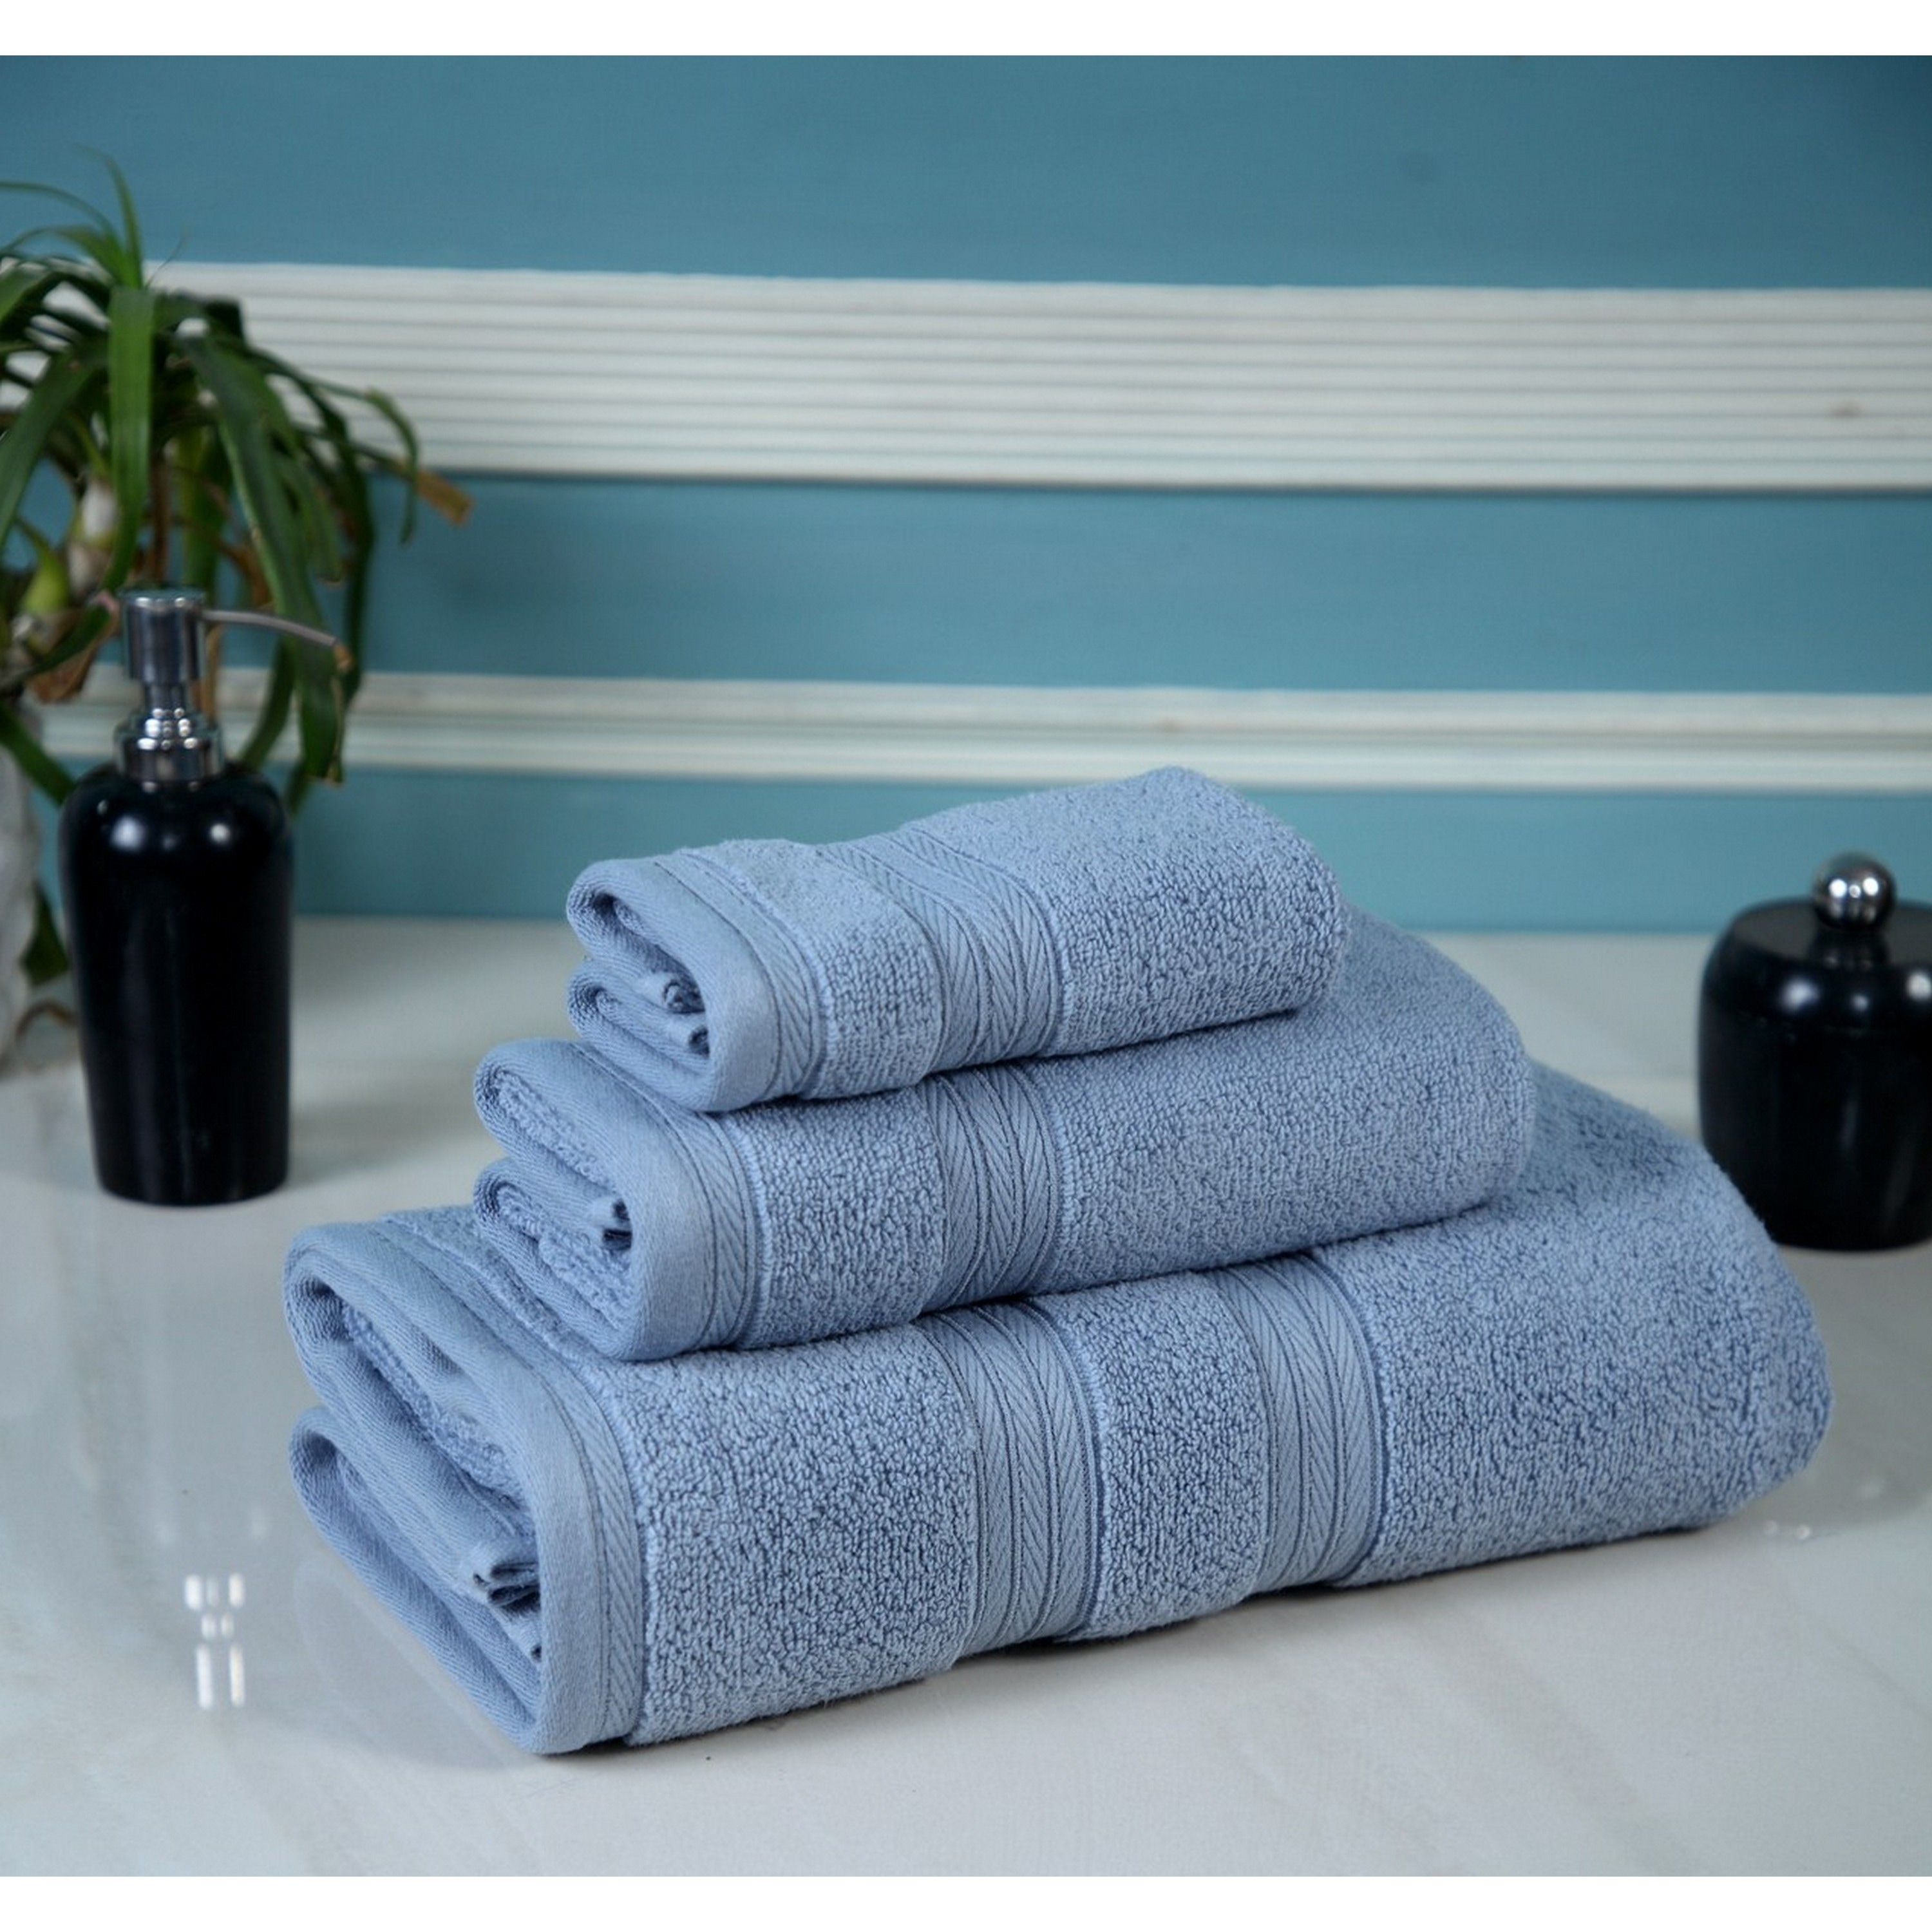 100% Cotton Bath Towels Set of 4 Orange Large 27" x 54" Size 